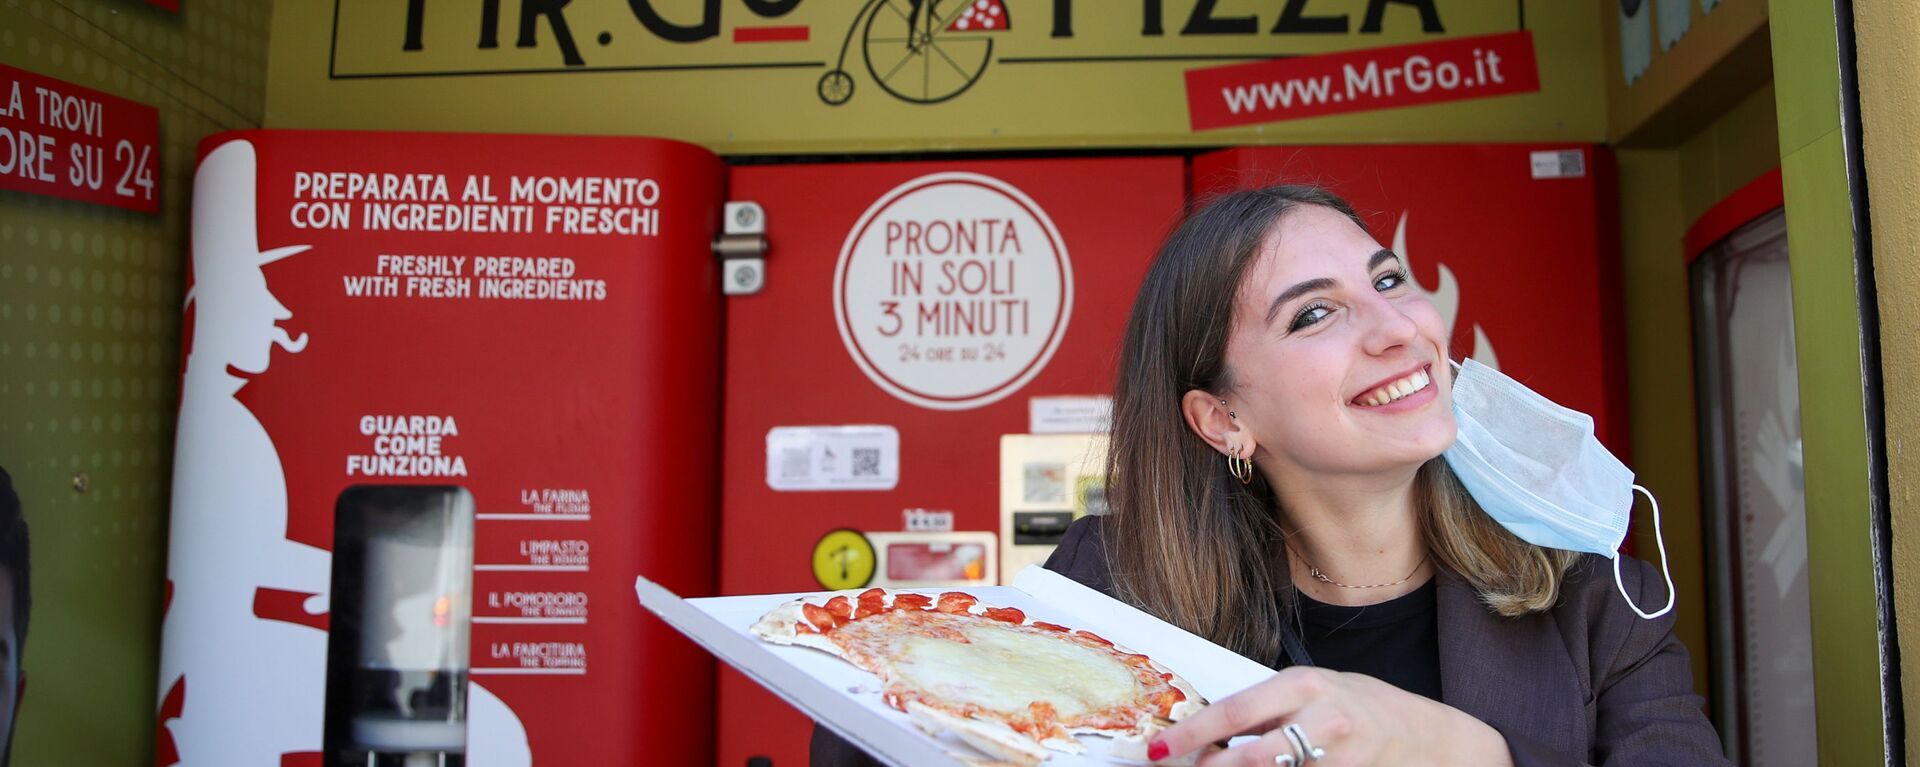 Roma'da taze pizza otomatı: 3 dakikada sıcak pizza veriyor - Sputnik Türkiye, 1920, 07.05.2021